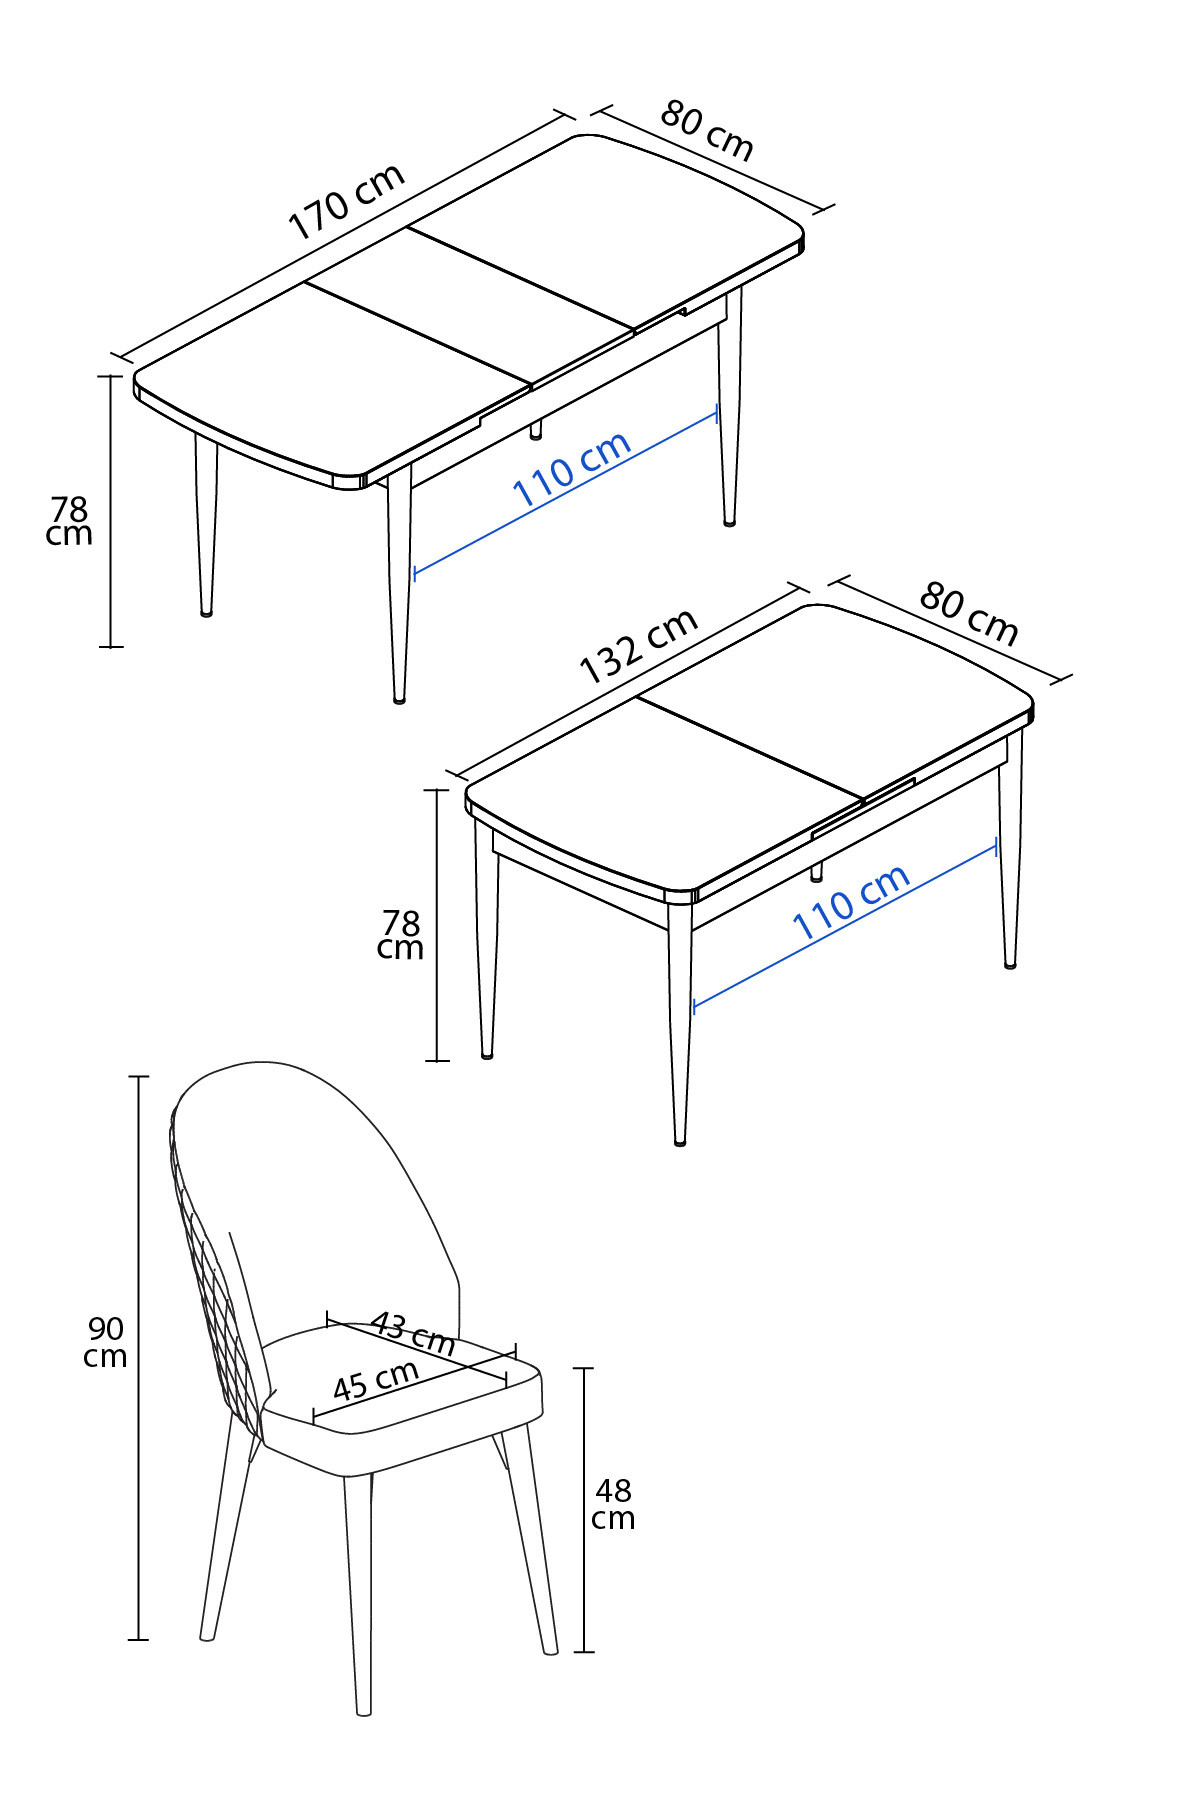 Rovena Modica Beyaz Mermer Desen 80x132 Açılabilir Yemek Masası Takımı 4 Adet Sandalye